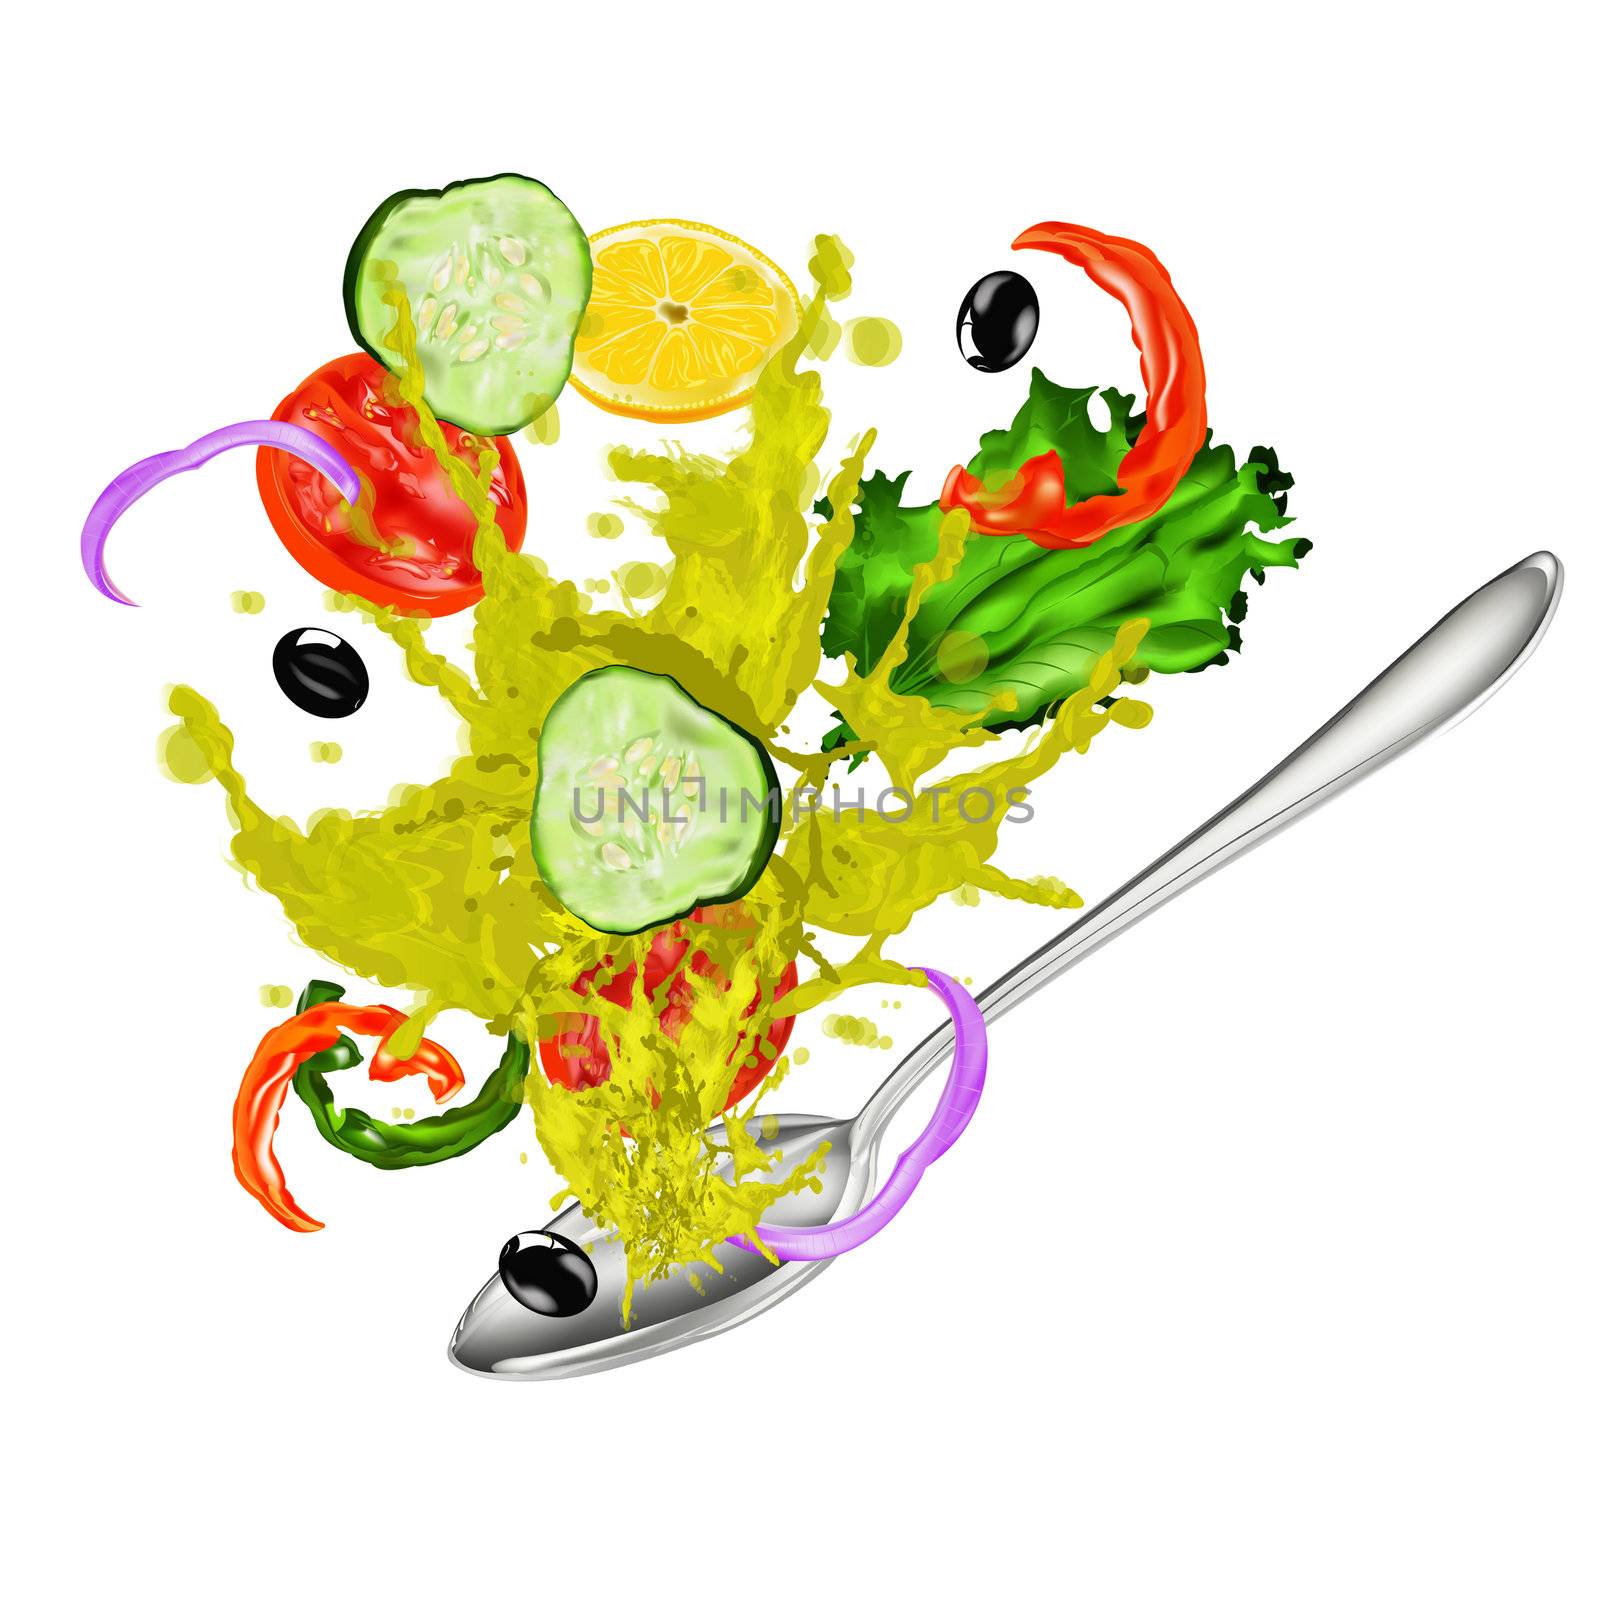 Fresh vegetarian vegetable salad and natural olive oil